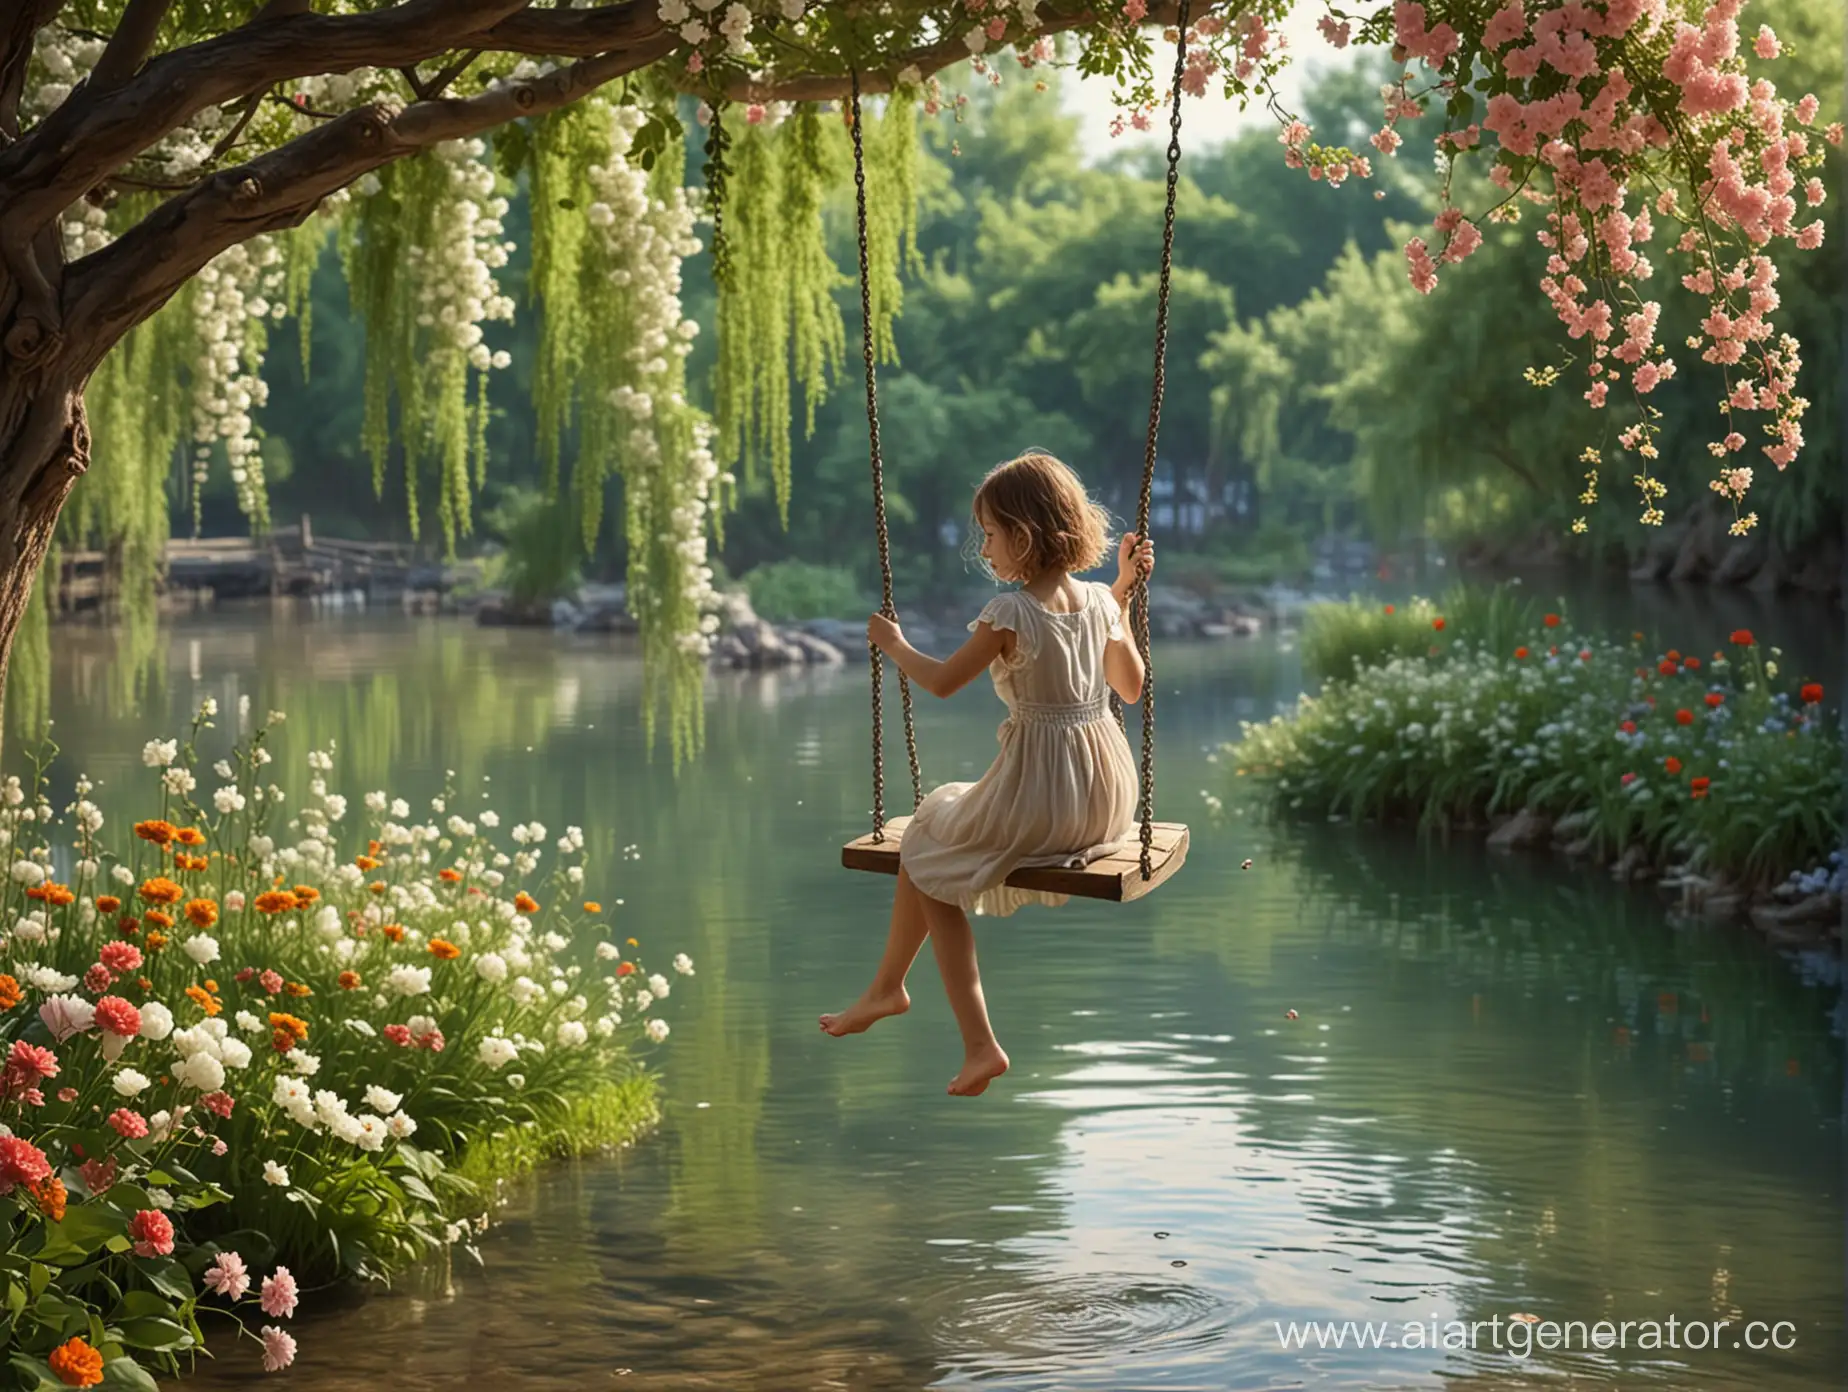 Девочка качается на качели над рекой, вокруг растут цветы, фон размытый, очень реалистично